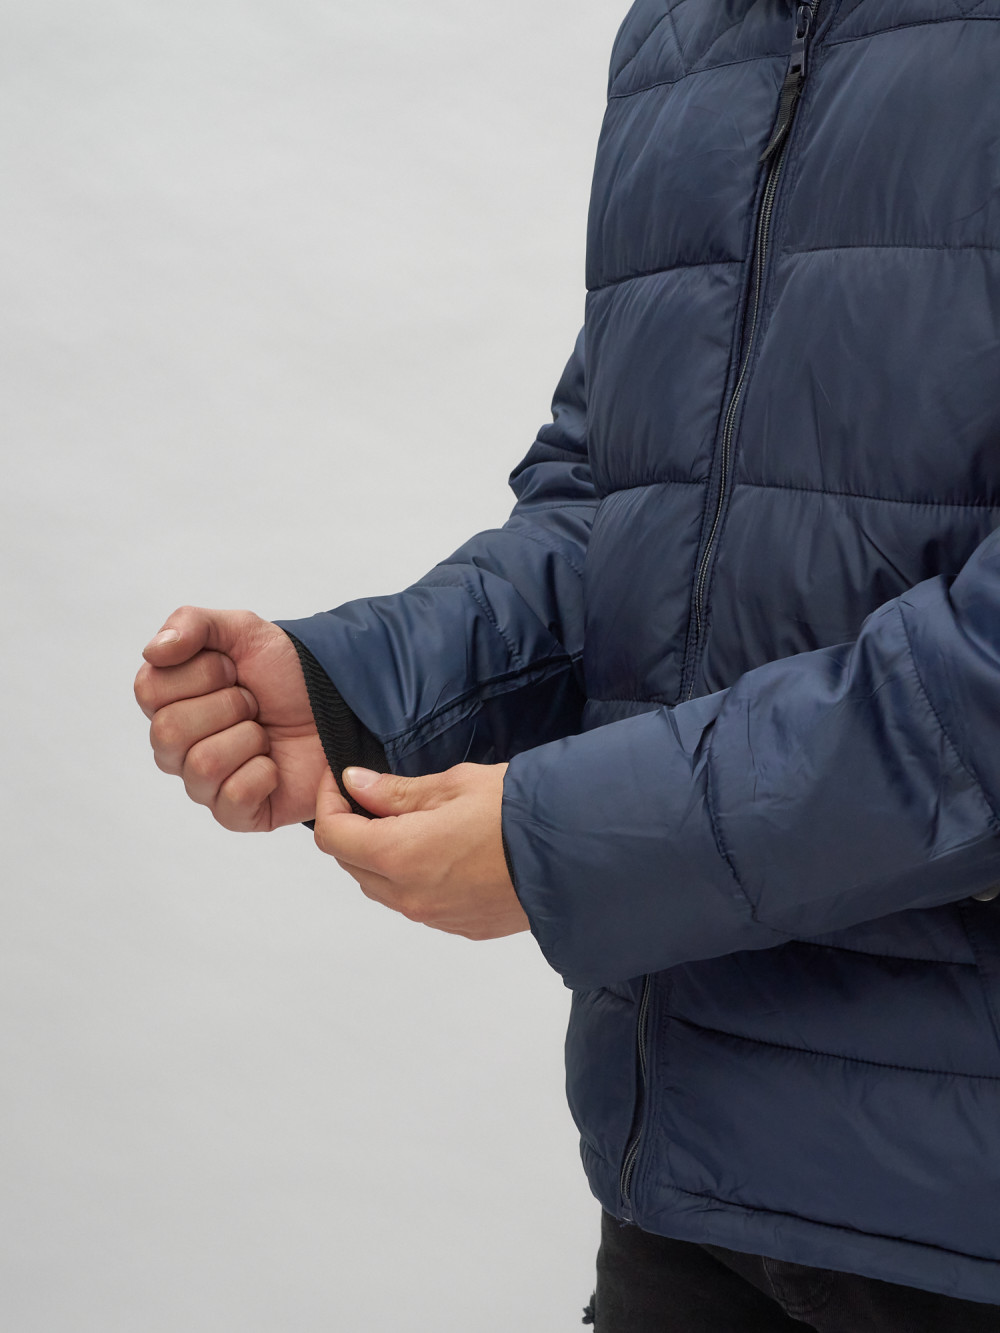 Купить куртку мужскую спортивную весеннюю оптом от производителя недорого в Москве 62179TS 1